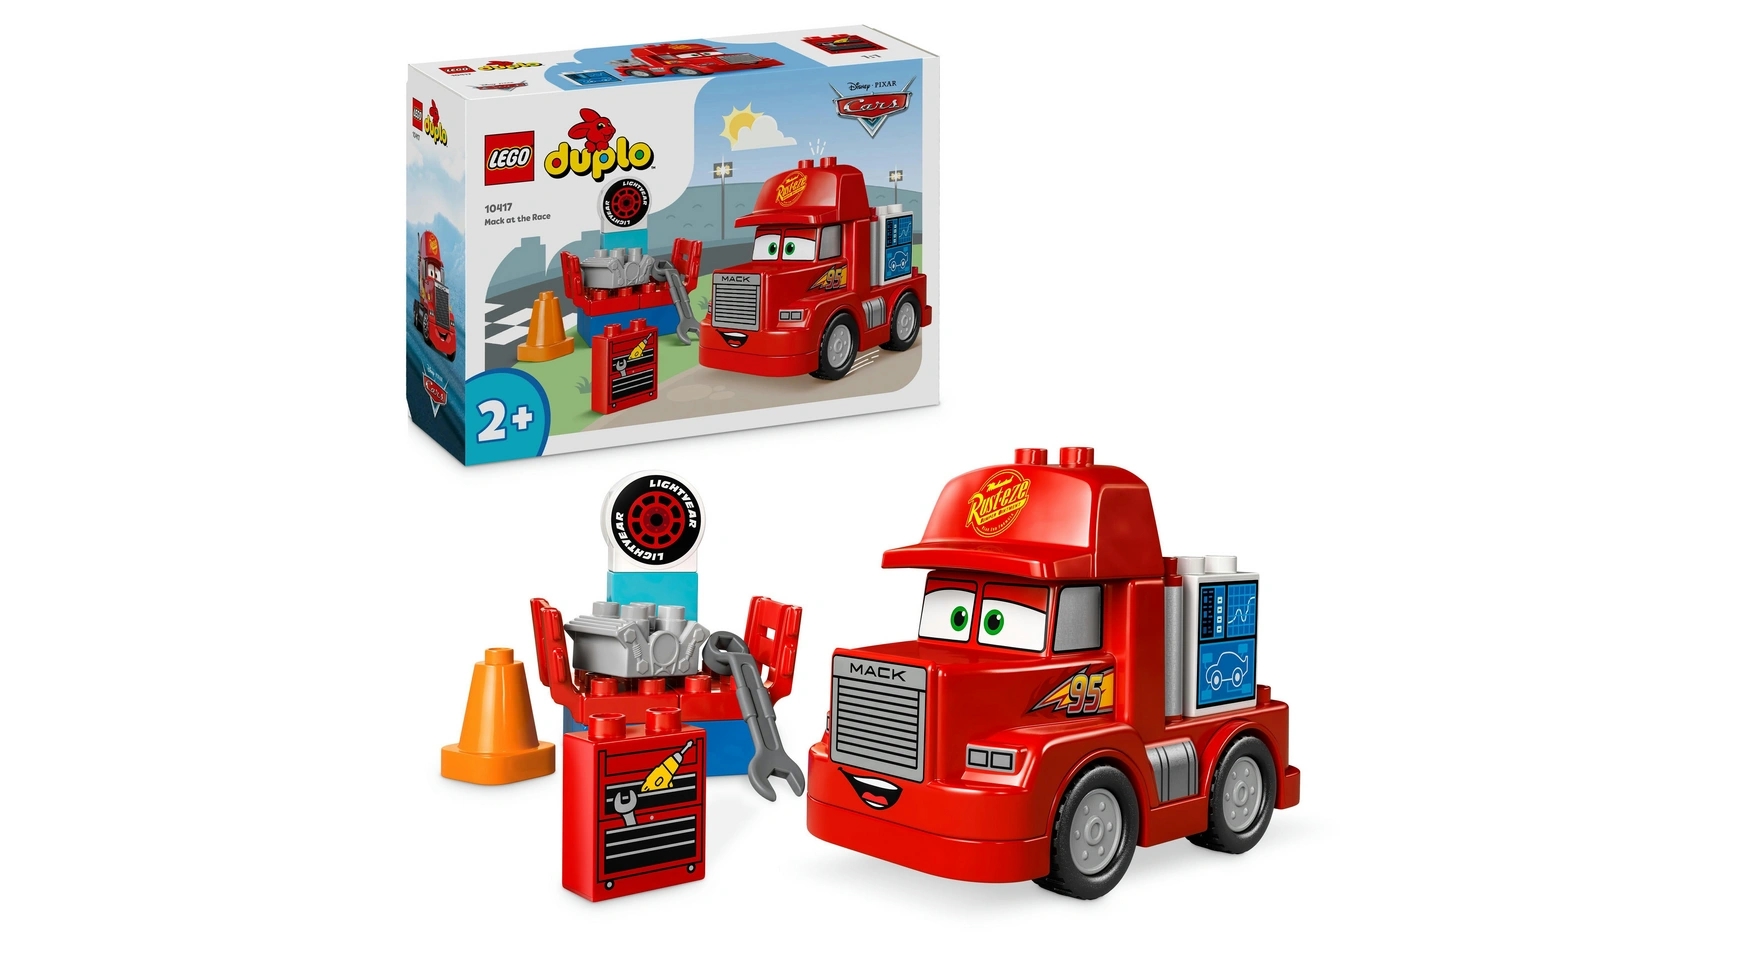 цена Lego DUPLO Гоночный грузовик Mack от Disney и Pixar Cars